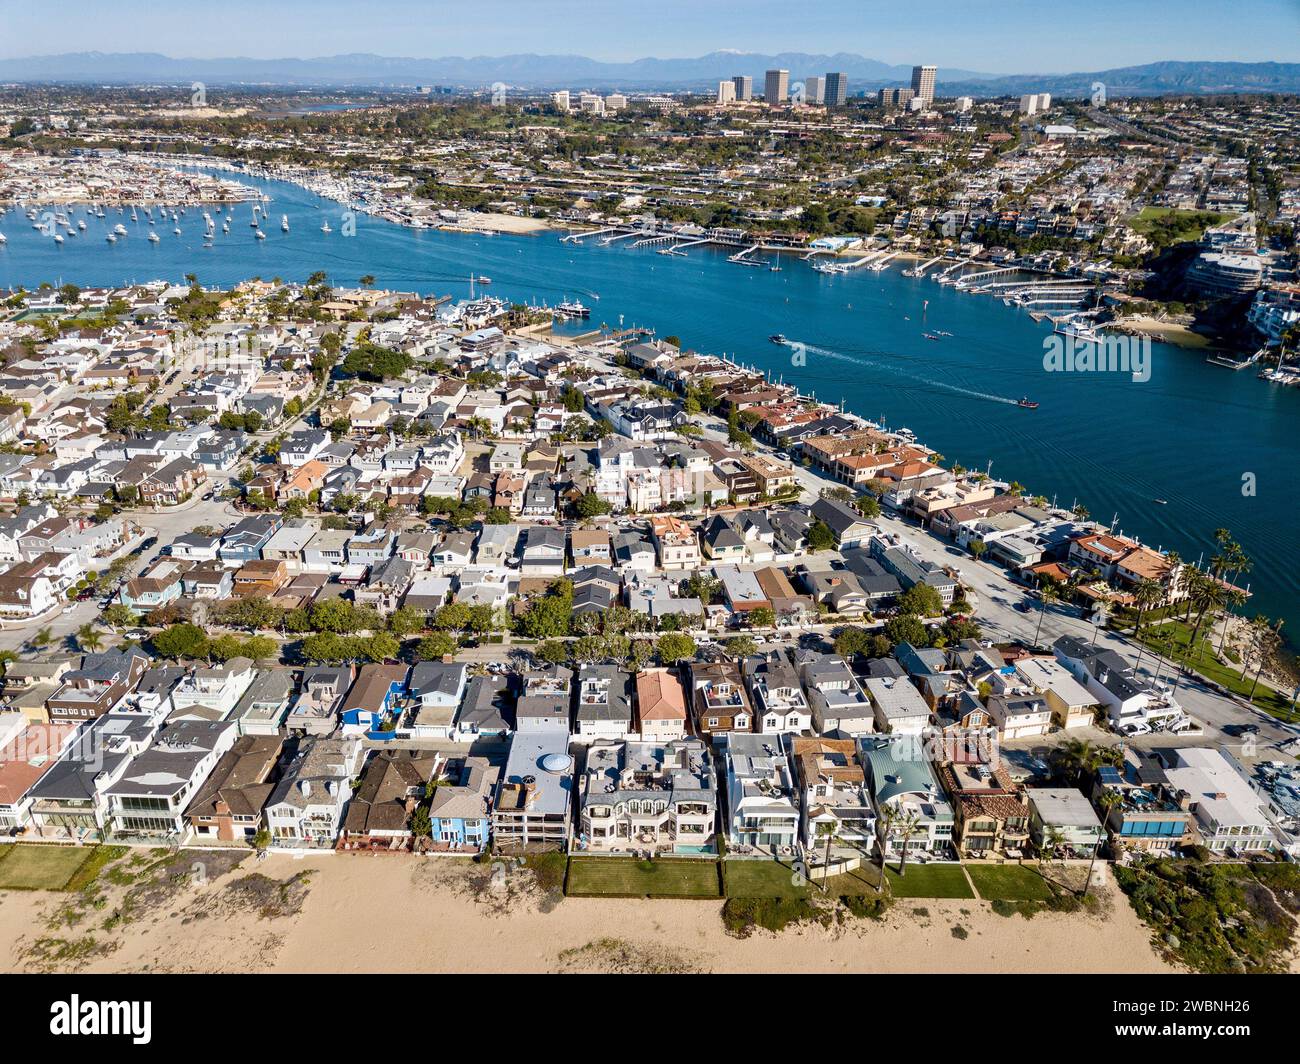 Vista aérea del paisaje de Newport Beach, casas de California, edificios y vías fluviales Foto de stock